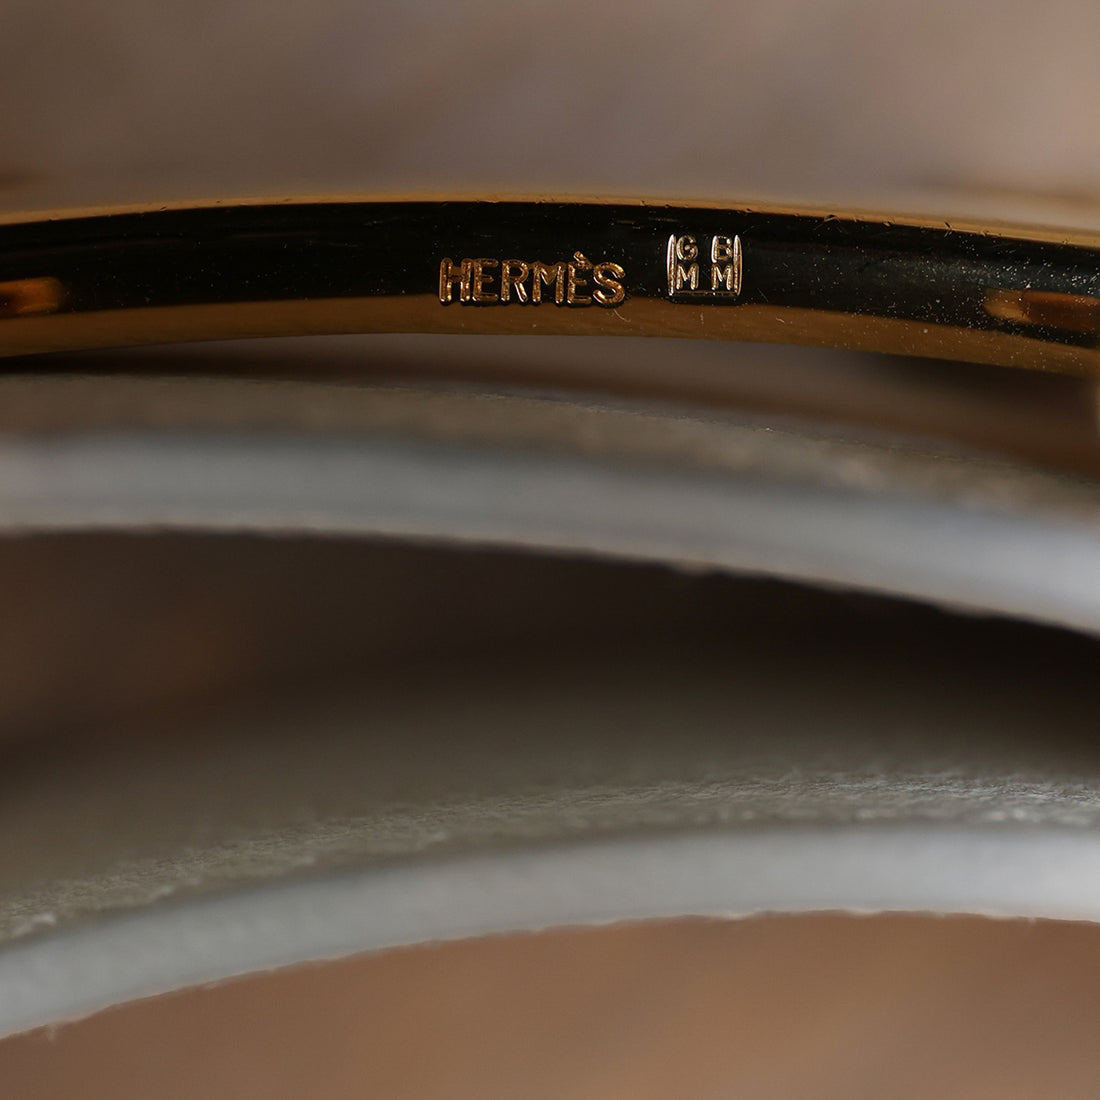 Hermès Wendegürtel "H" mit goldener Schließe 30mm in Weiß